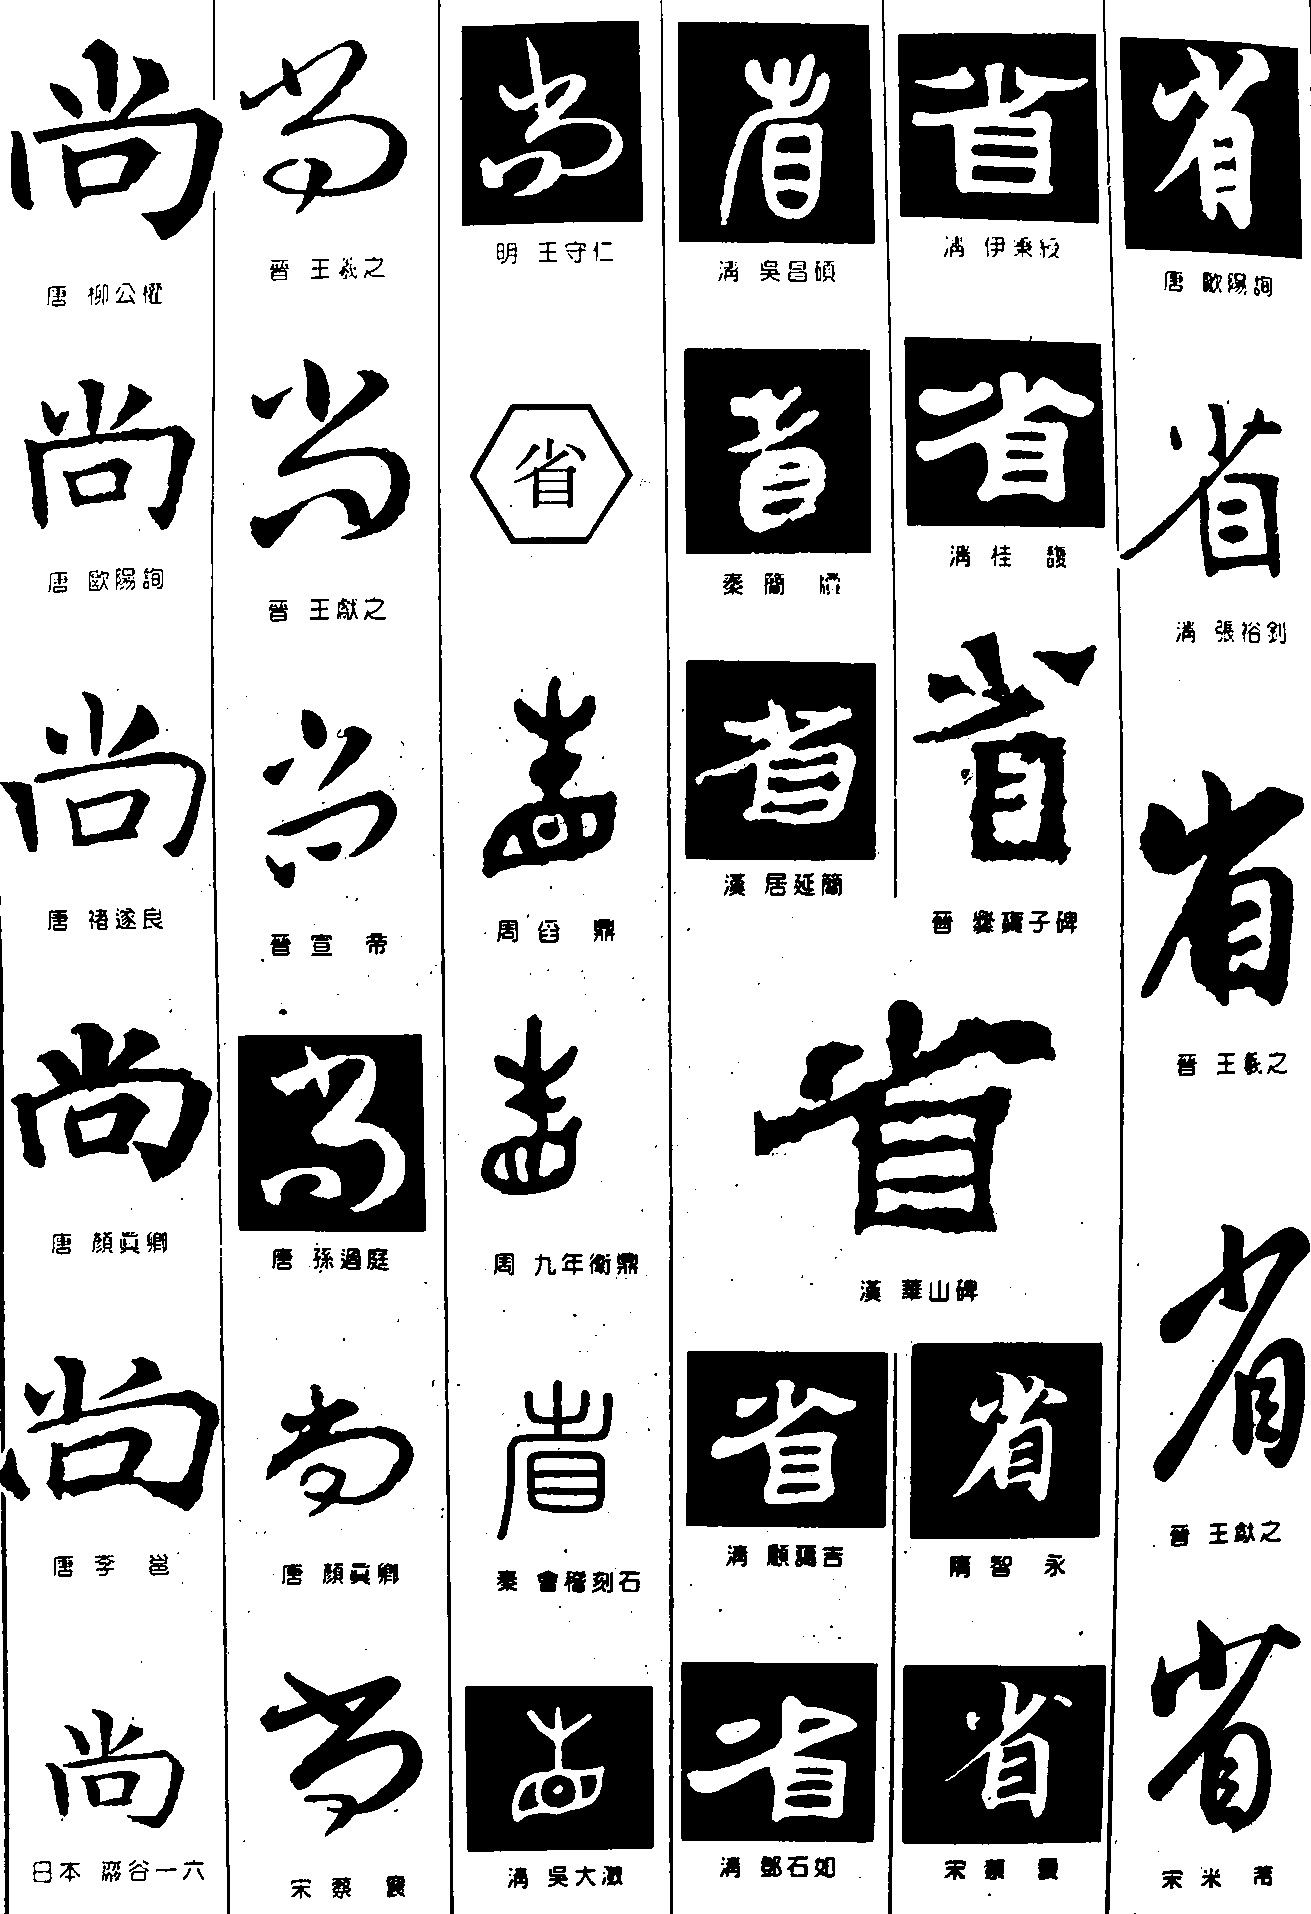 尚省- 艺术字体_艺术字体设计_字体下载_中国书法字体